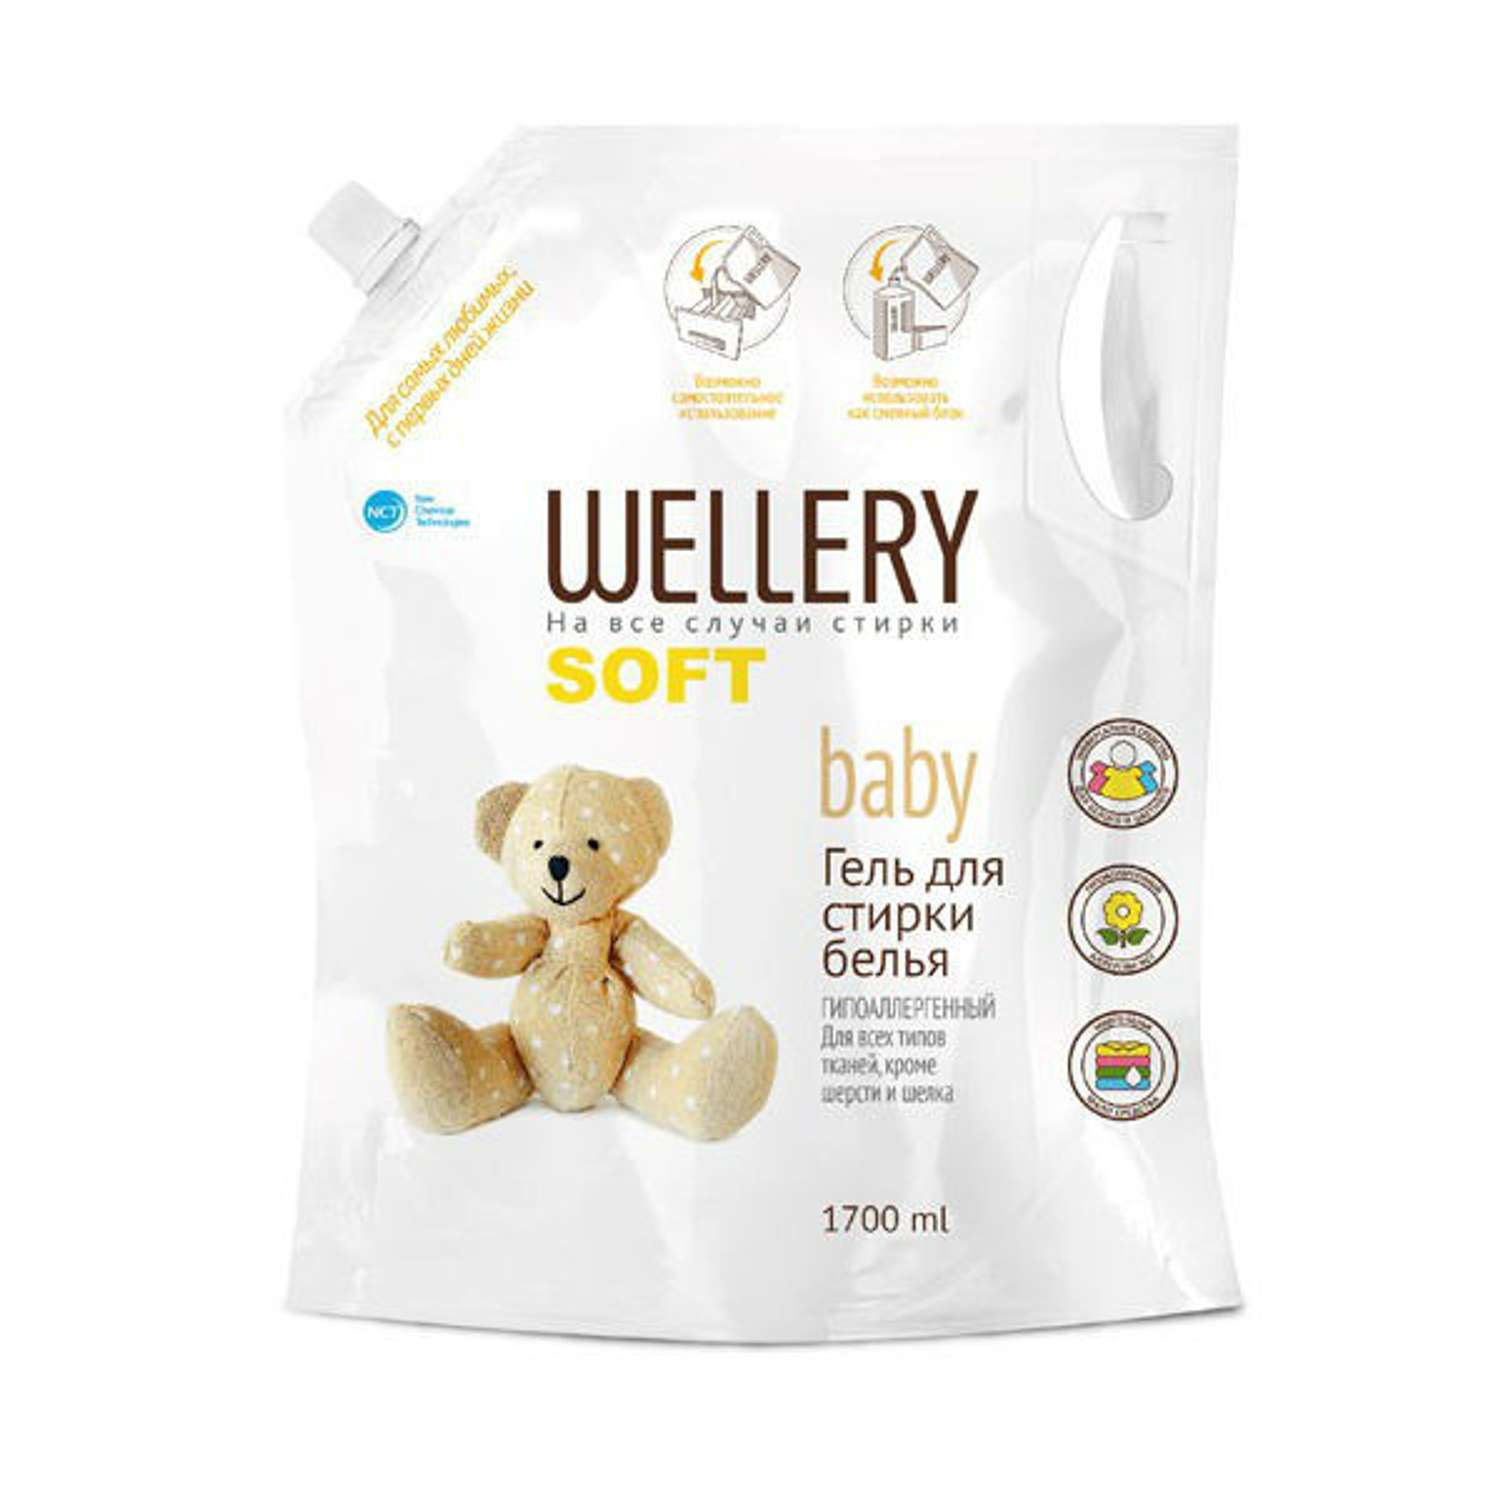 Гель для стирки Wellery Soft baby гипоаллергенный 1700 мл - фото 1